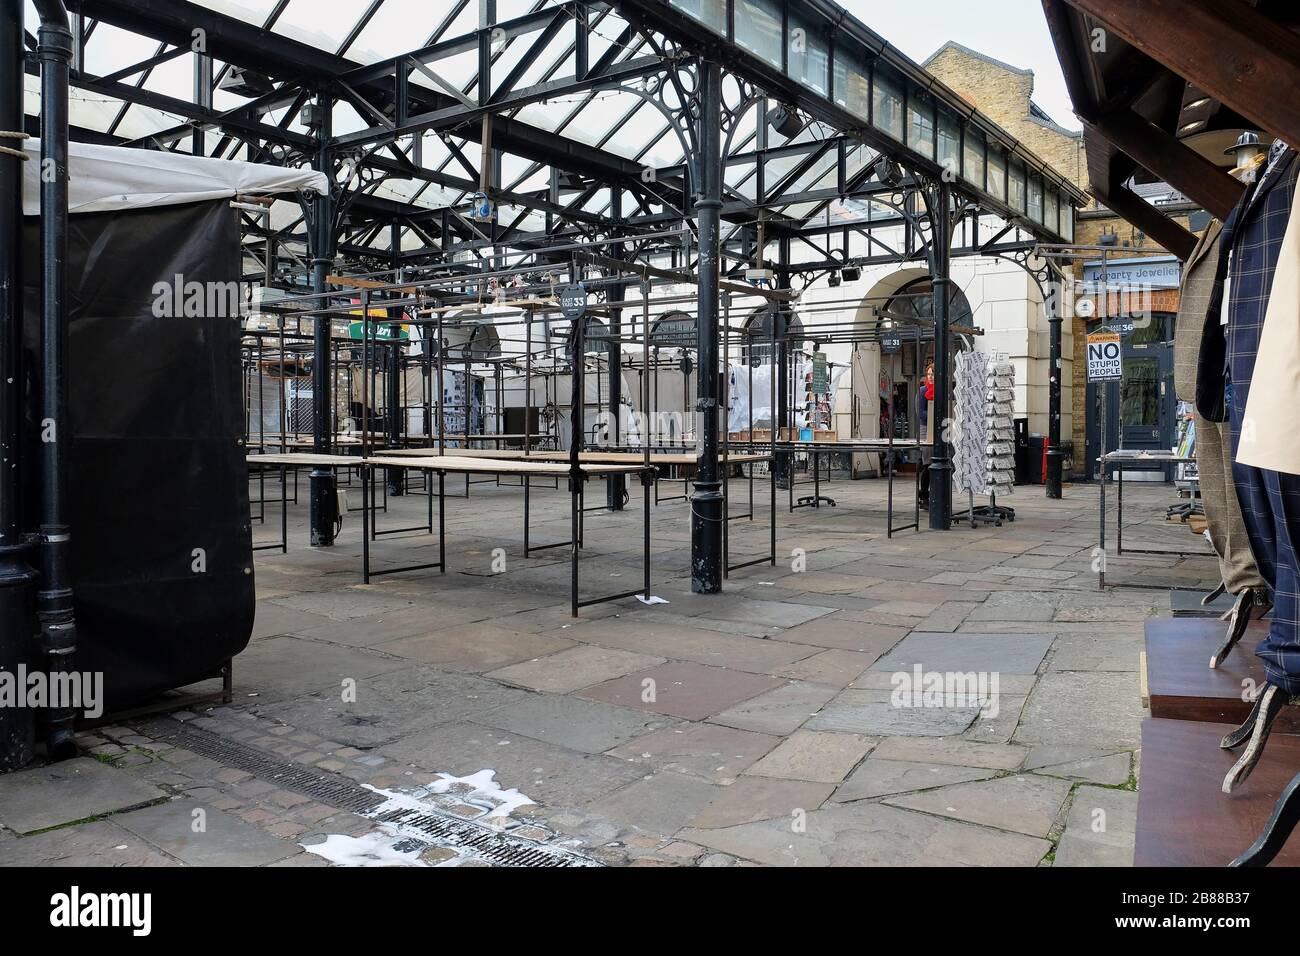 Camden Market, Londres, Angleterre - 20 mars 2020: Les touristes et les acheteurs restent loin du marché Camden pendant la pandémie de Coronavirus Banque D'Images